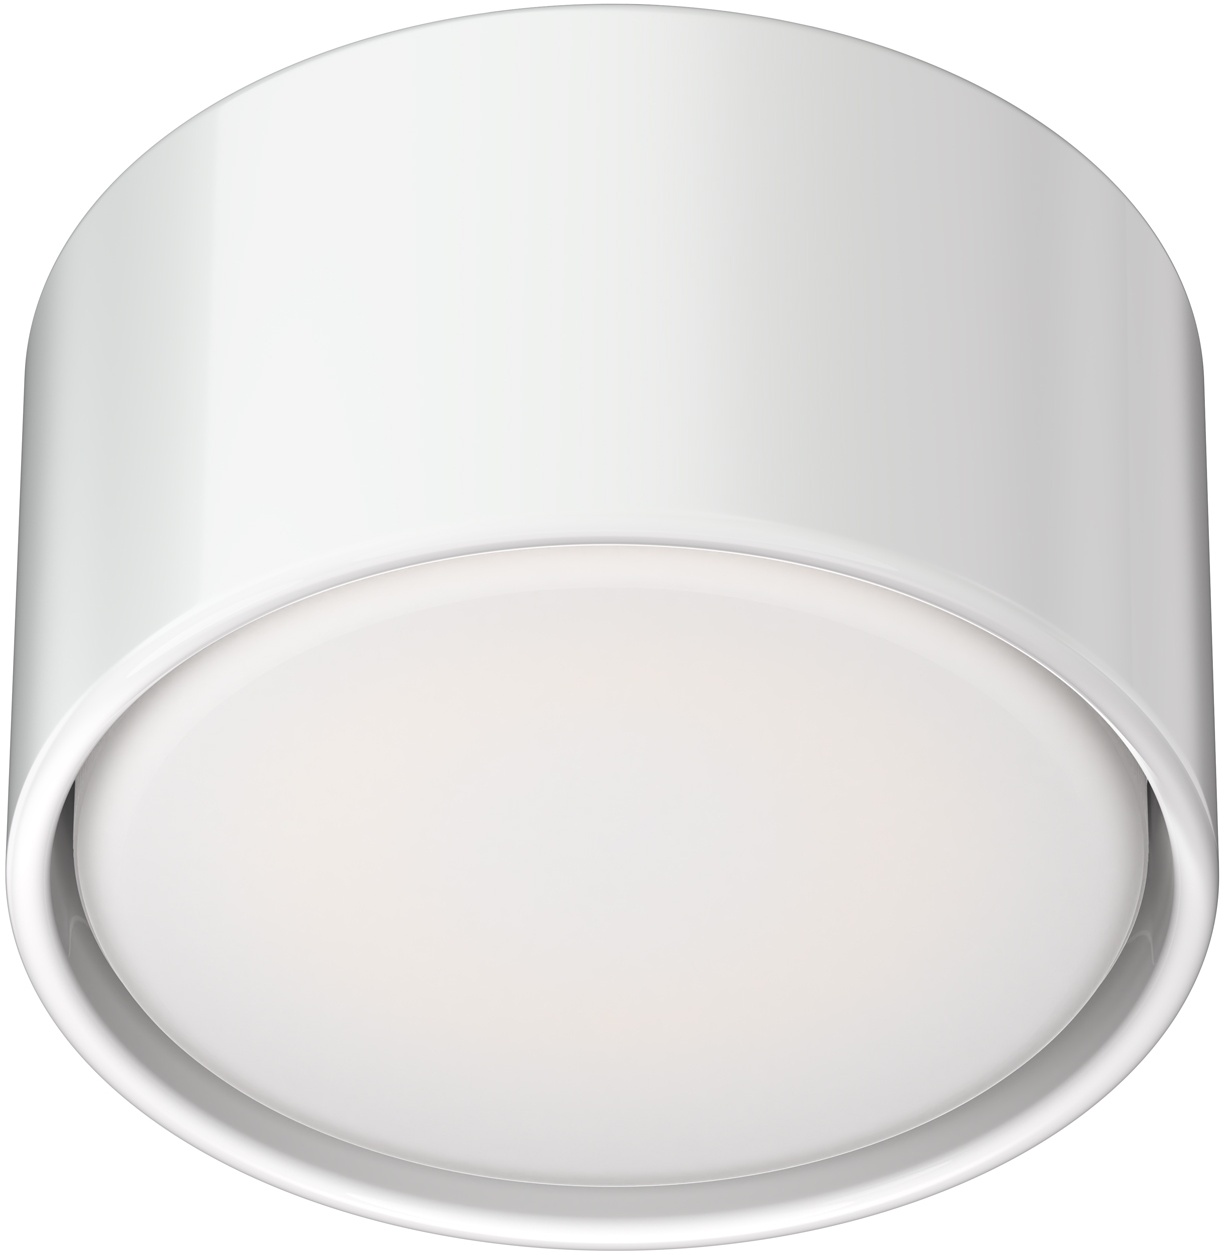 ledscom.de GX53 Porzellan Aufbauleuchte KLU, rund, weiß, 91mm Ø, inkl. GX53 LED Lampe, warmweiß, 3-Stufen Dimmen ohne Dimmer mit Lichtschalter: 541lm / 210lm / 63lm